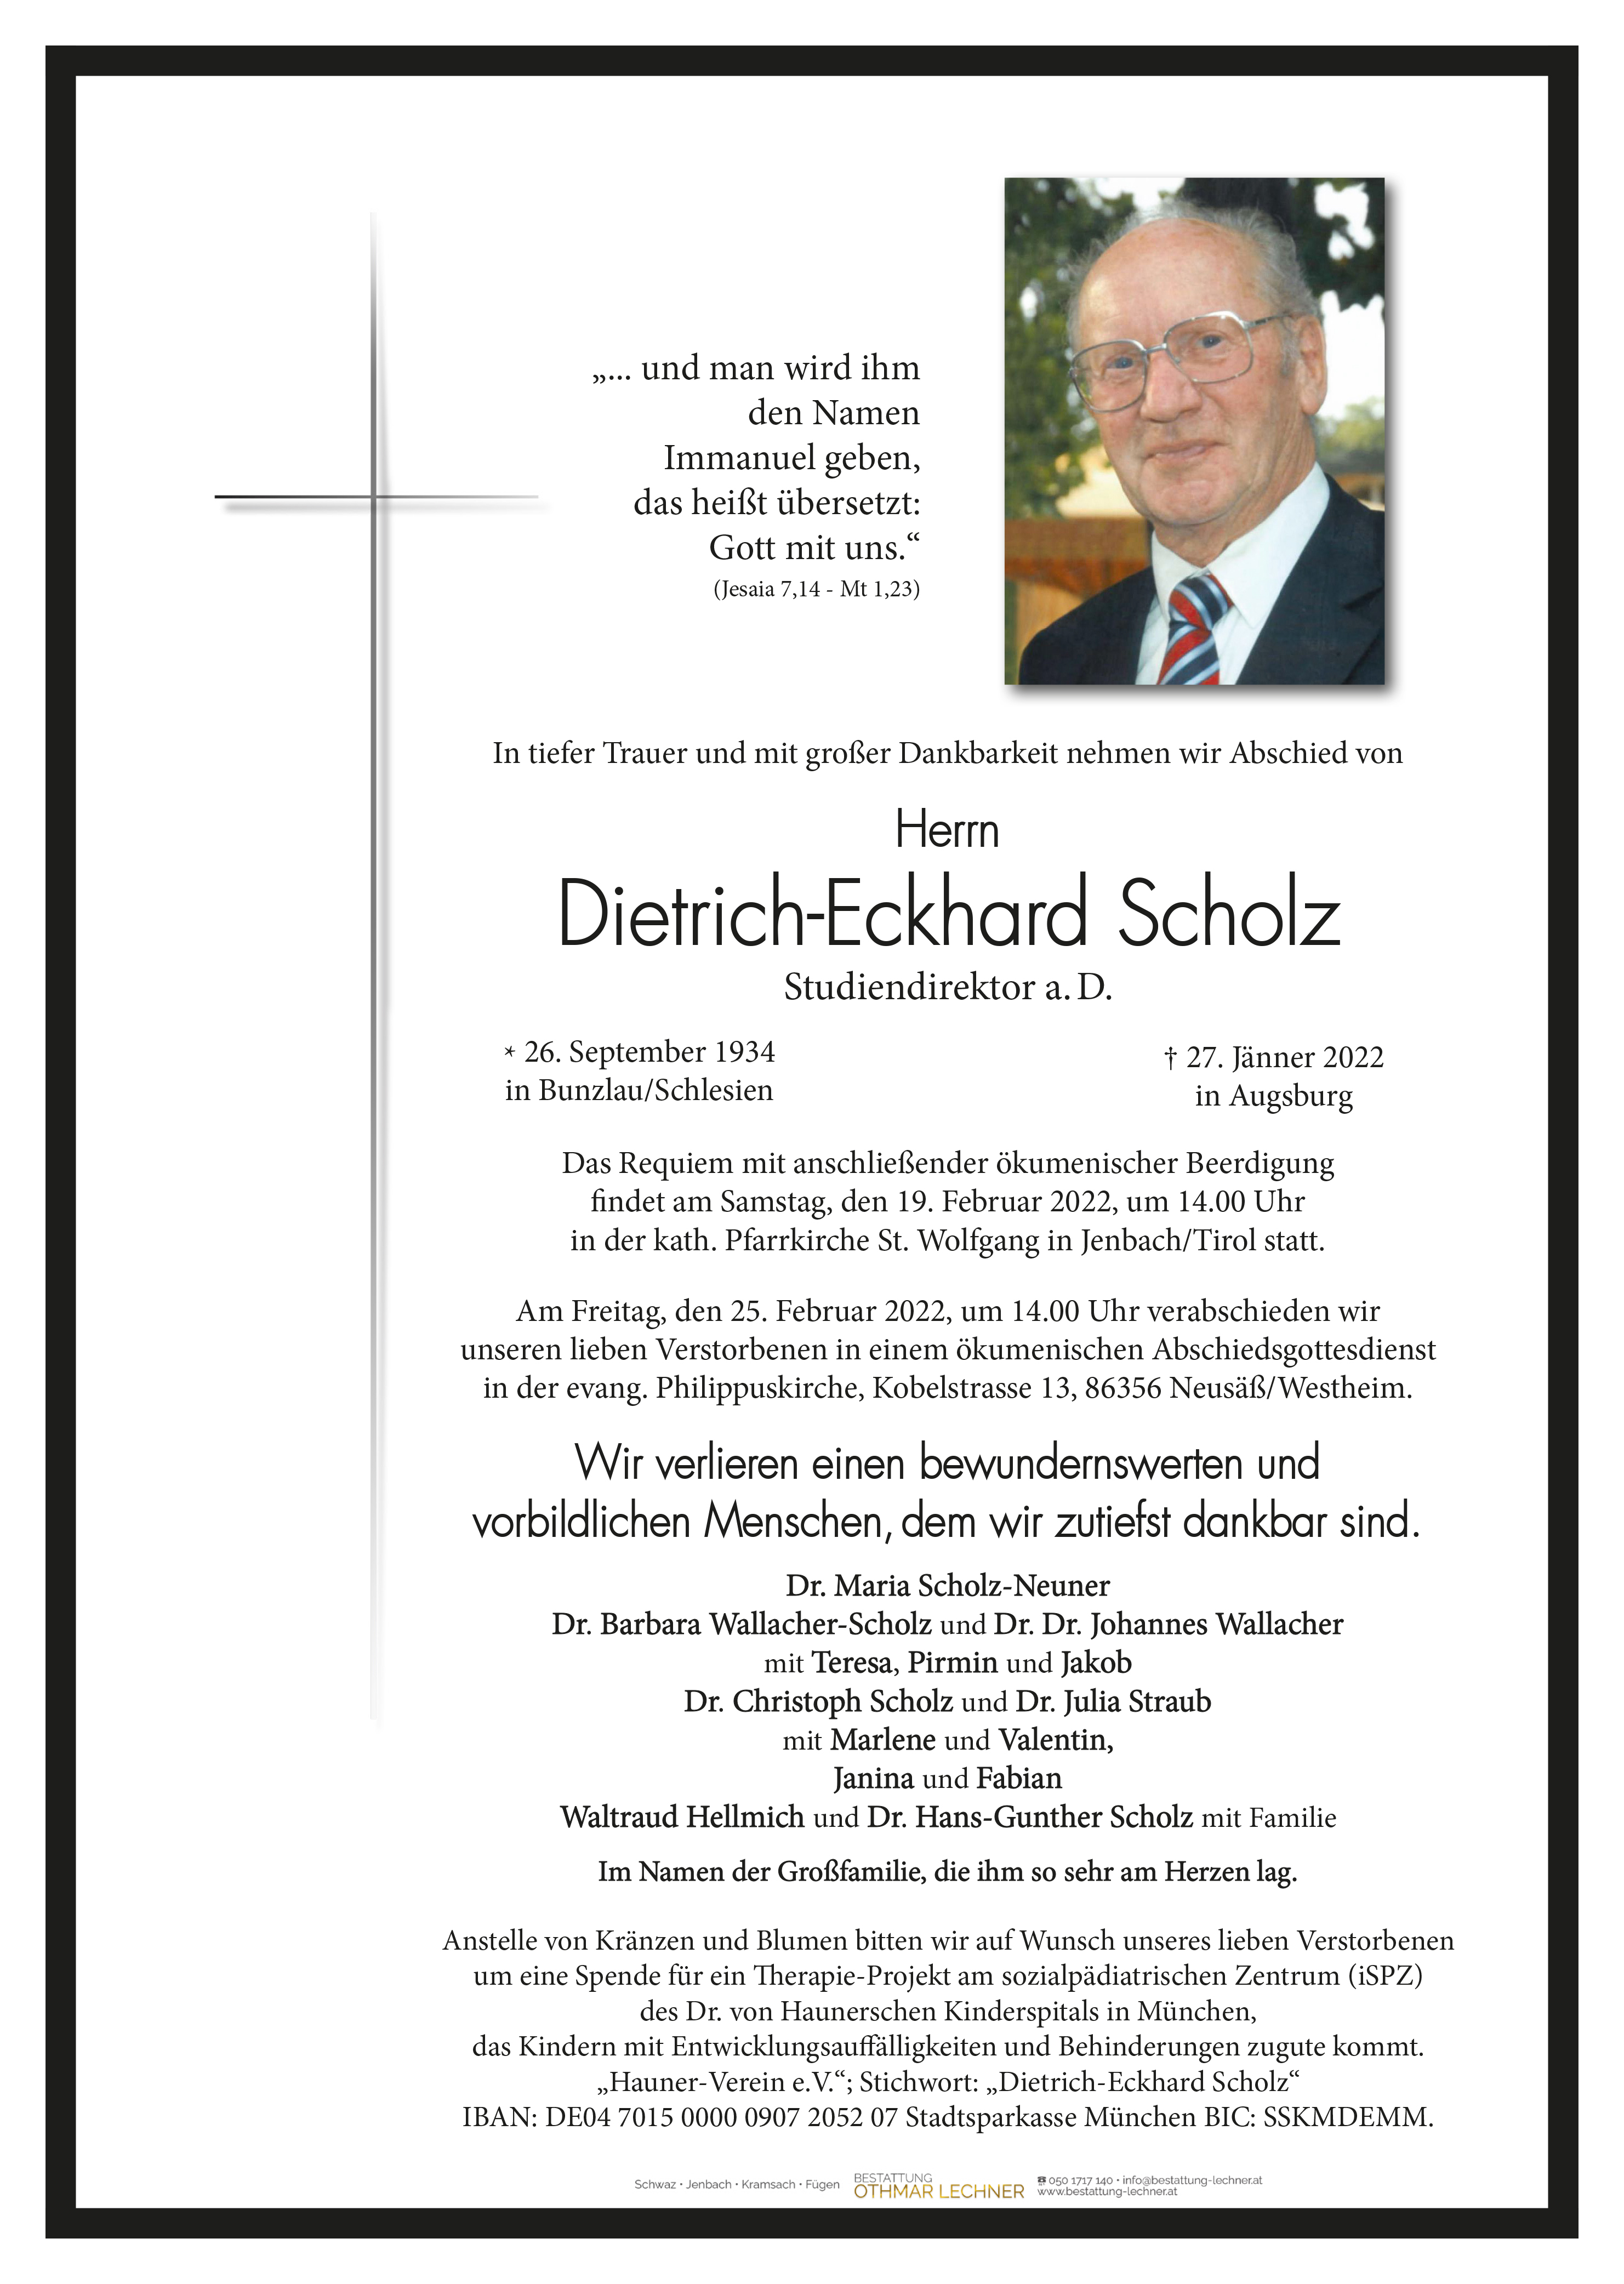 Dietrich-Eckhard Scholz